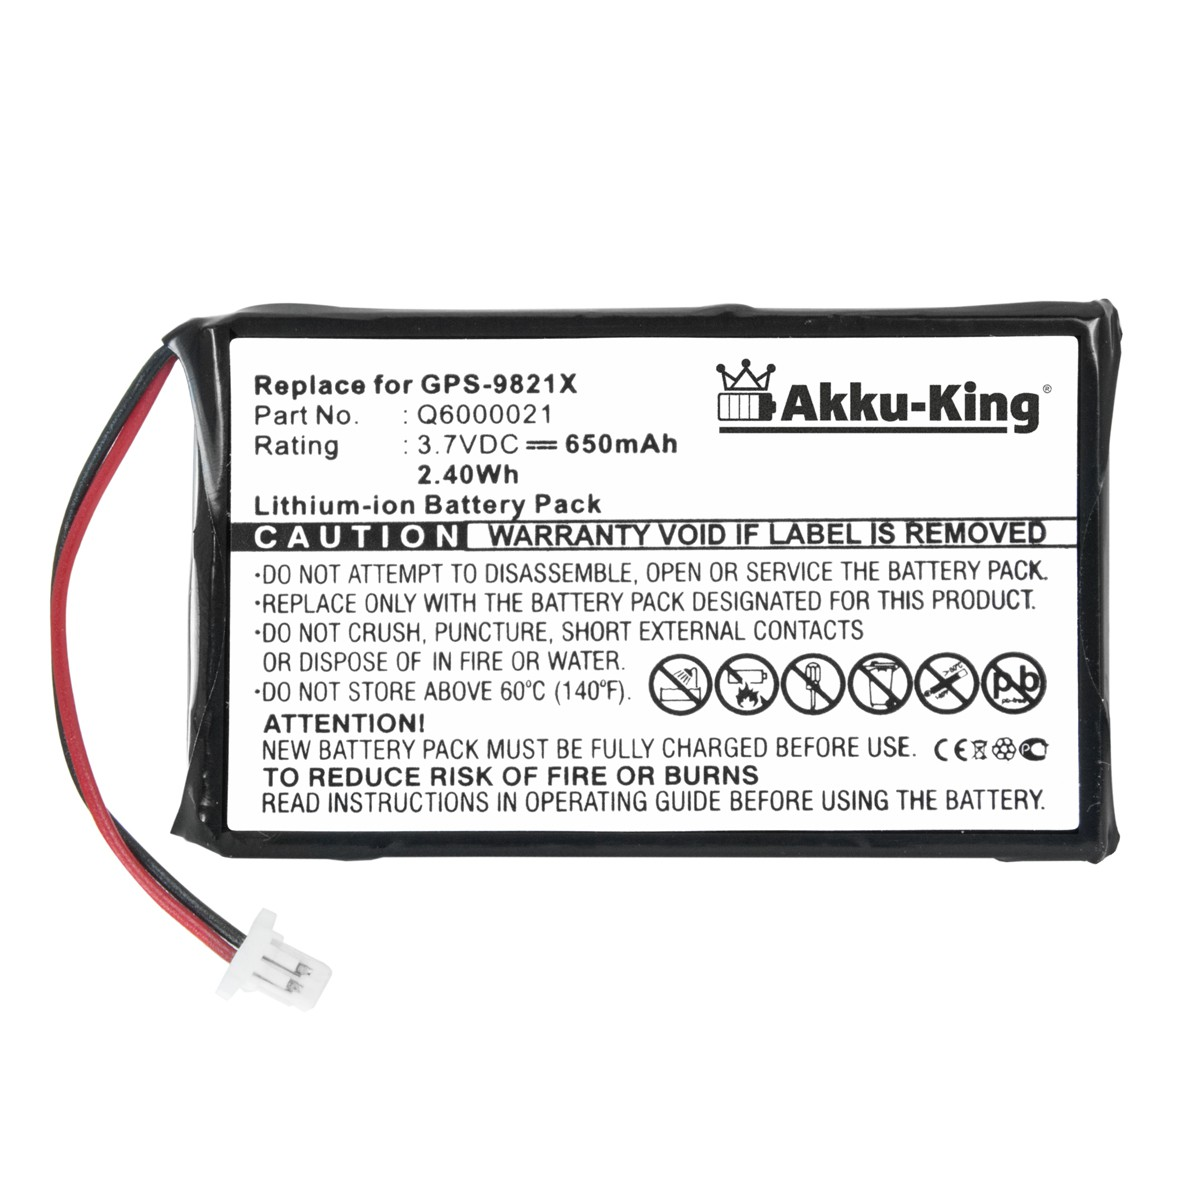 AKKU-KING Akku kompatibel 3.7 Volt, Geräte-Akku, 650mAh mit Q6000021 TomTom Li-Ion